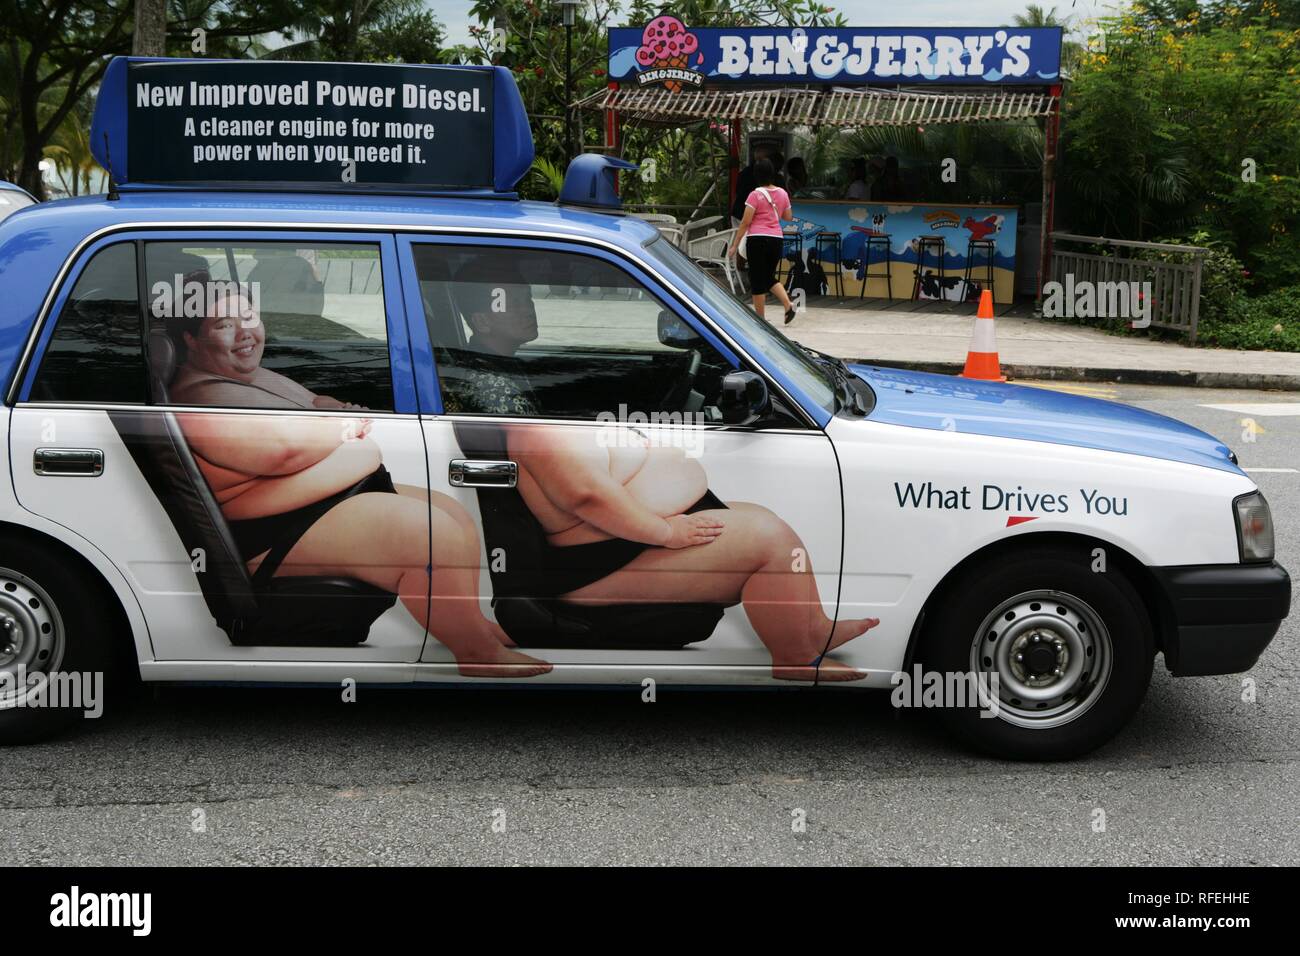 Swp, Singapur: Werbung mit Sumo Ringer auf ein Taxi. | Stockfoto